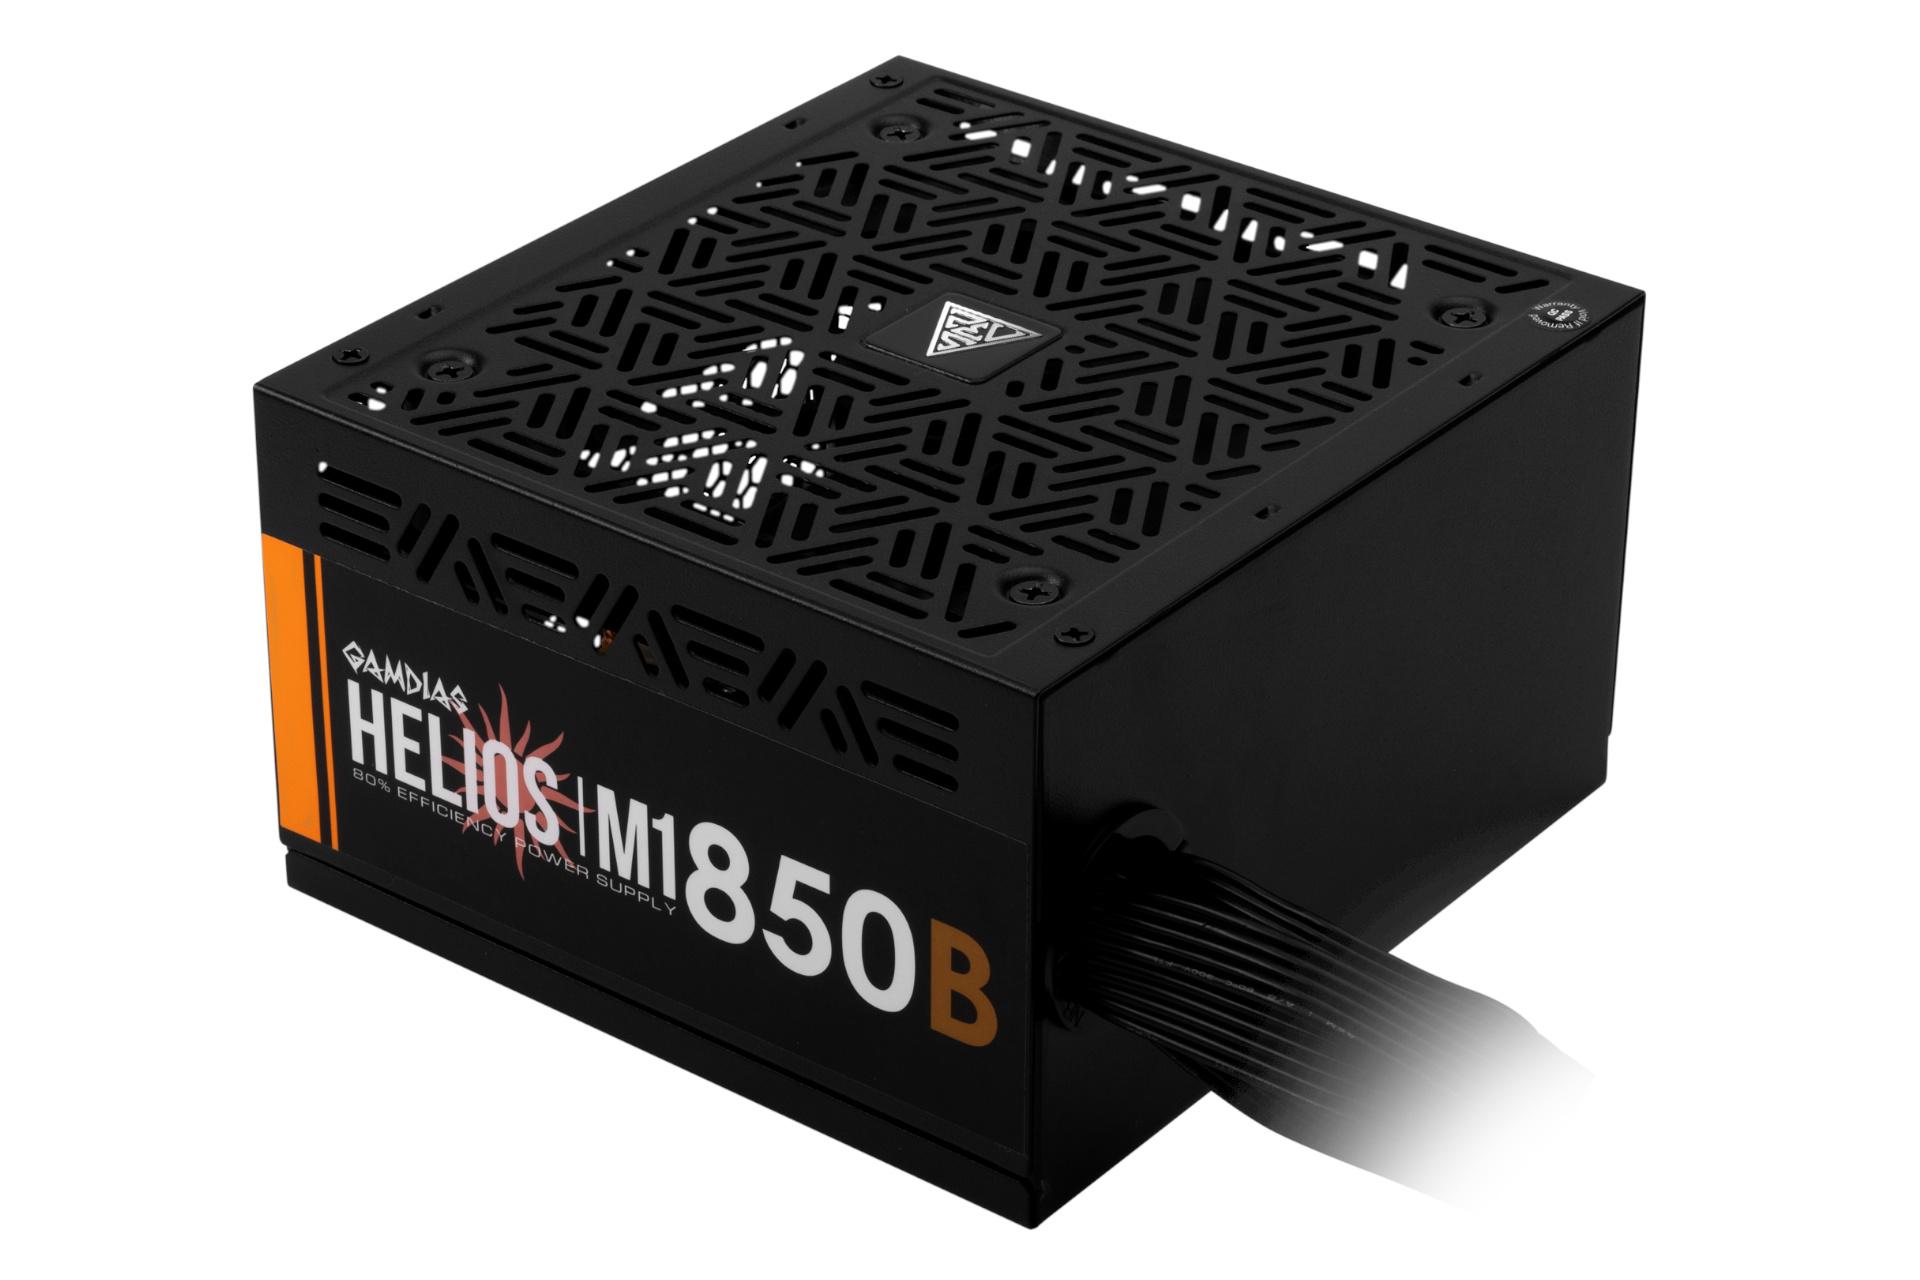 پاور کامپیوتر گیم دیاس HELIOS M1-850B با توان 850 وات